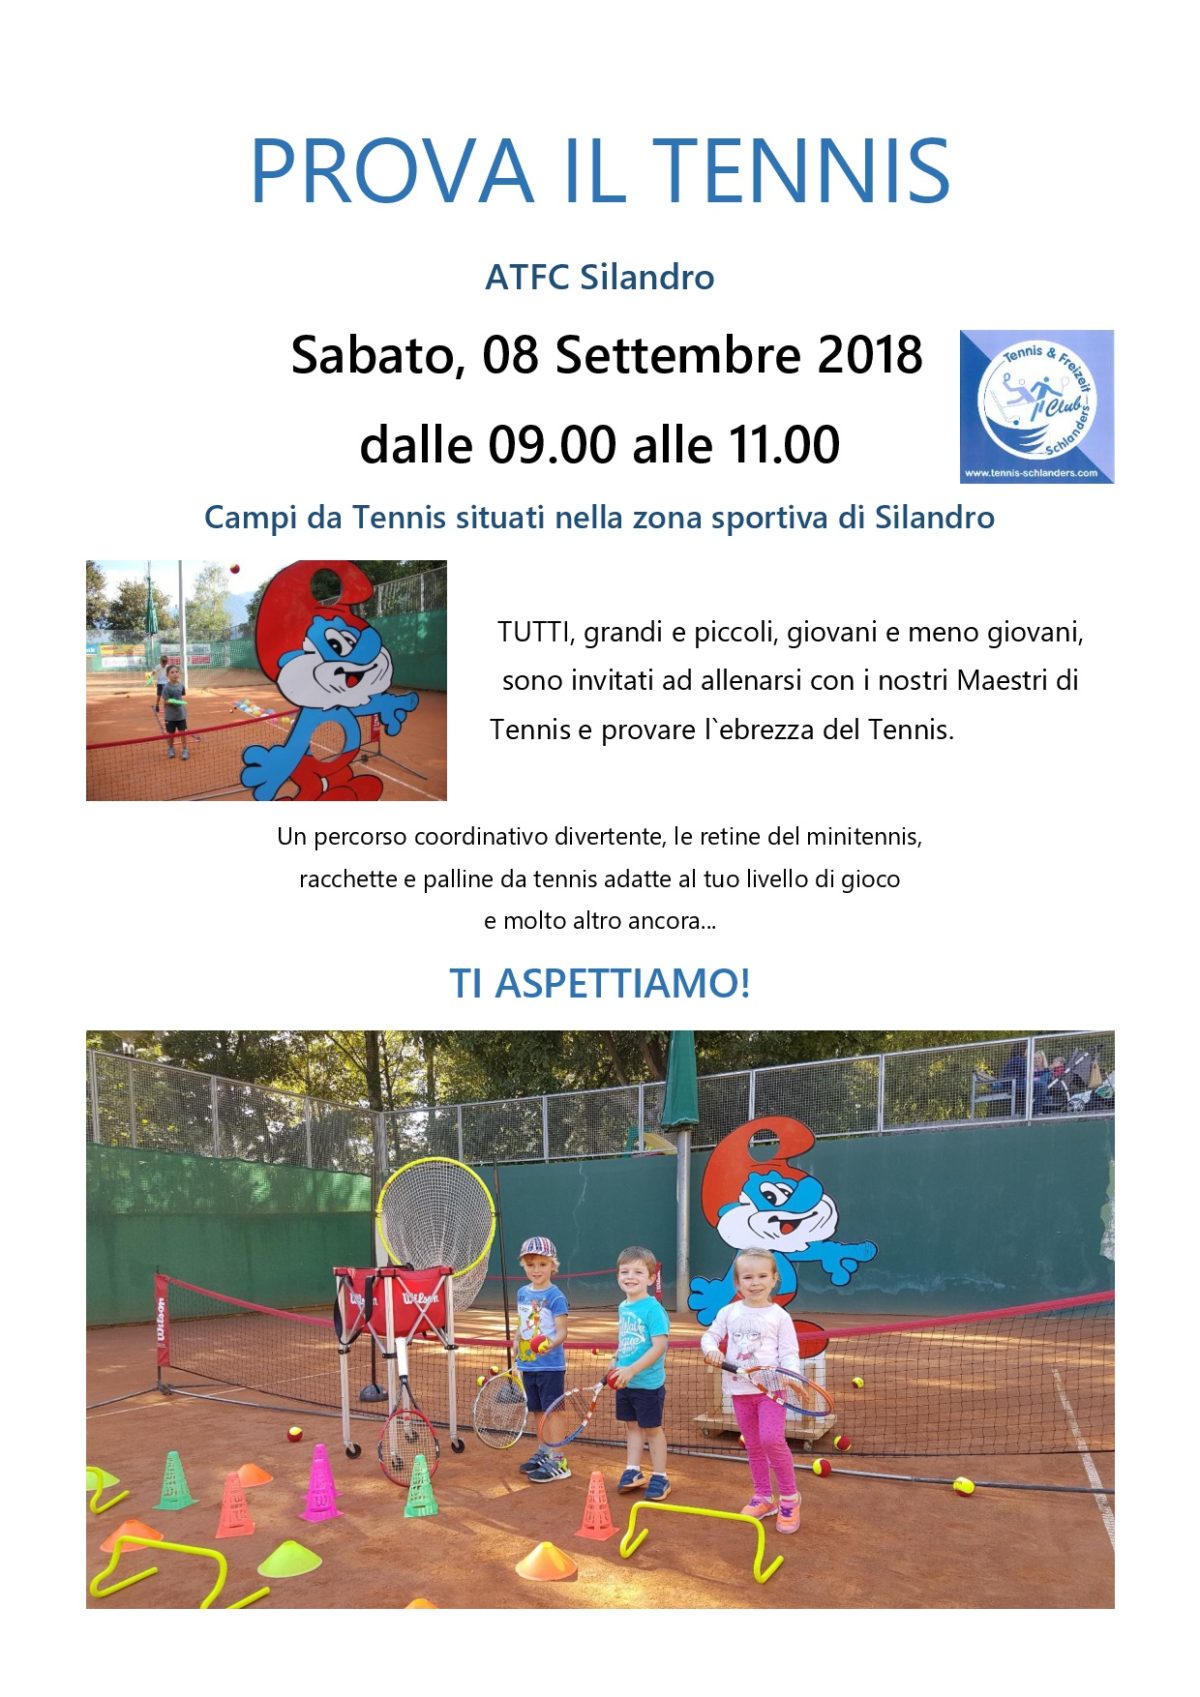 ATFC Silandro Prova il Tennis Autunno 2018